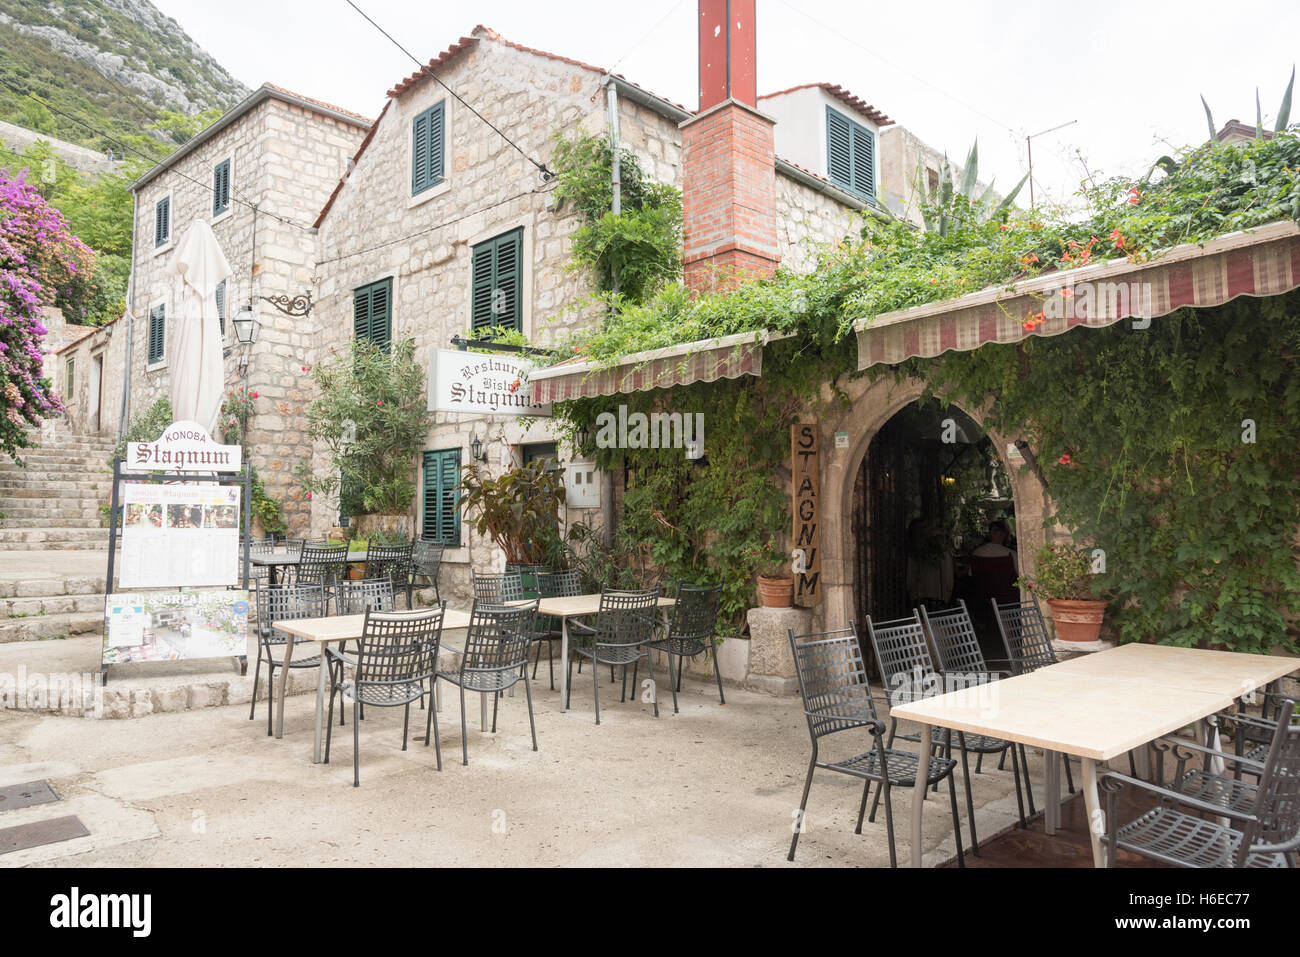 Il ristorante di pesce e frutti di mare in Stagnum Ston Croazia che mostra i tavoli fuori e la vite entrata coperta Foto Stock